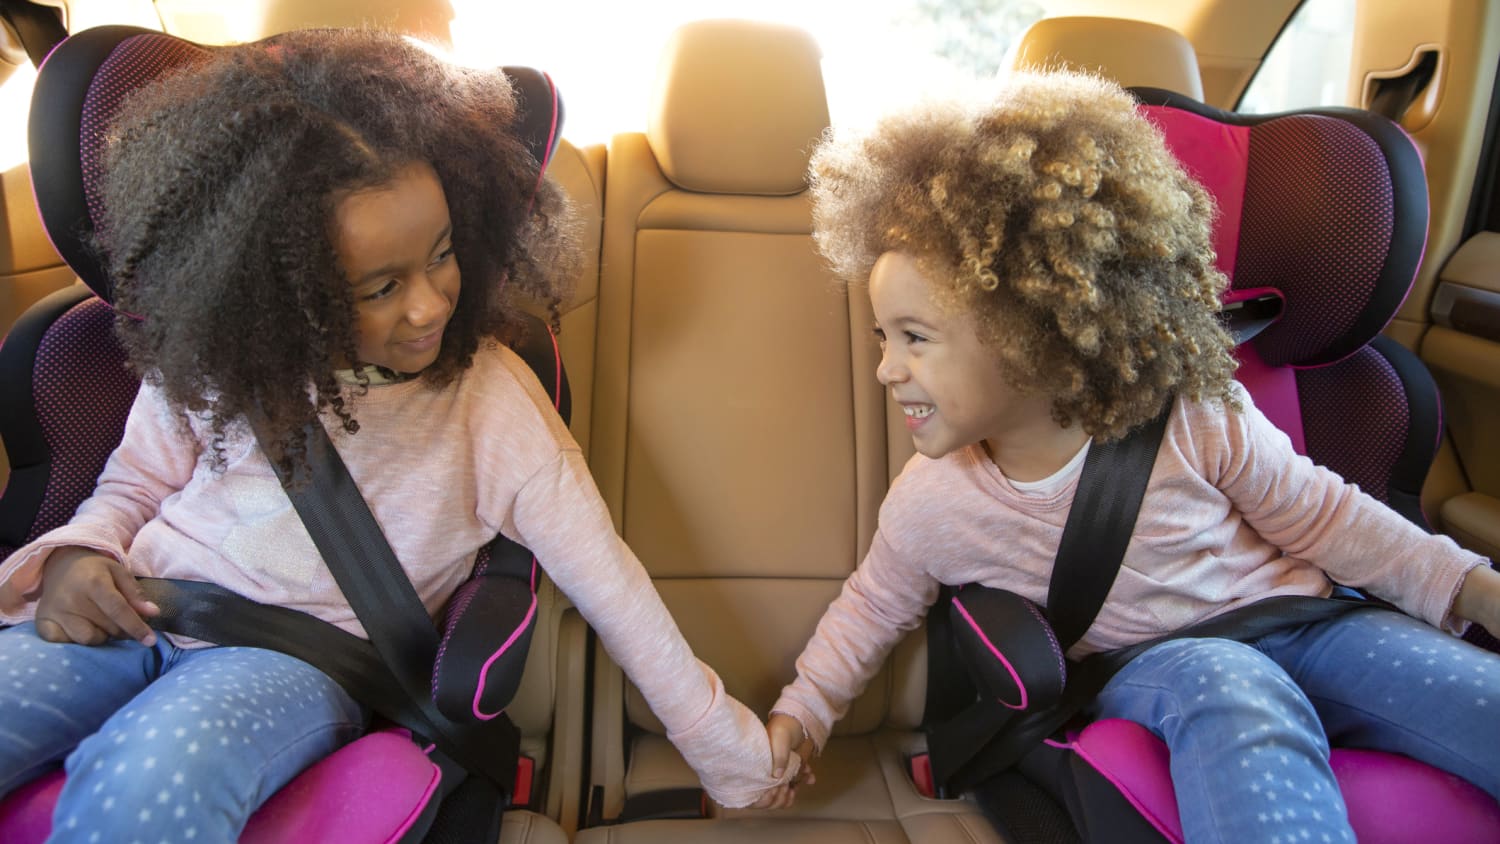 Kindersicherheit im Auto - Teil 3 